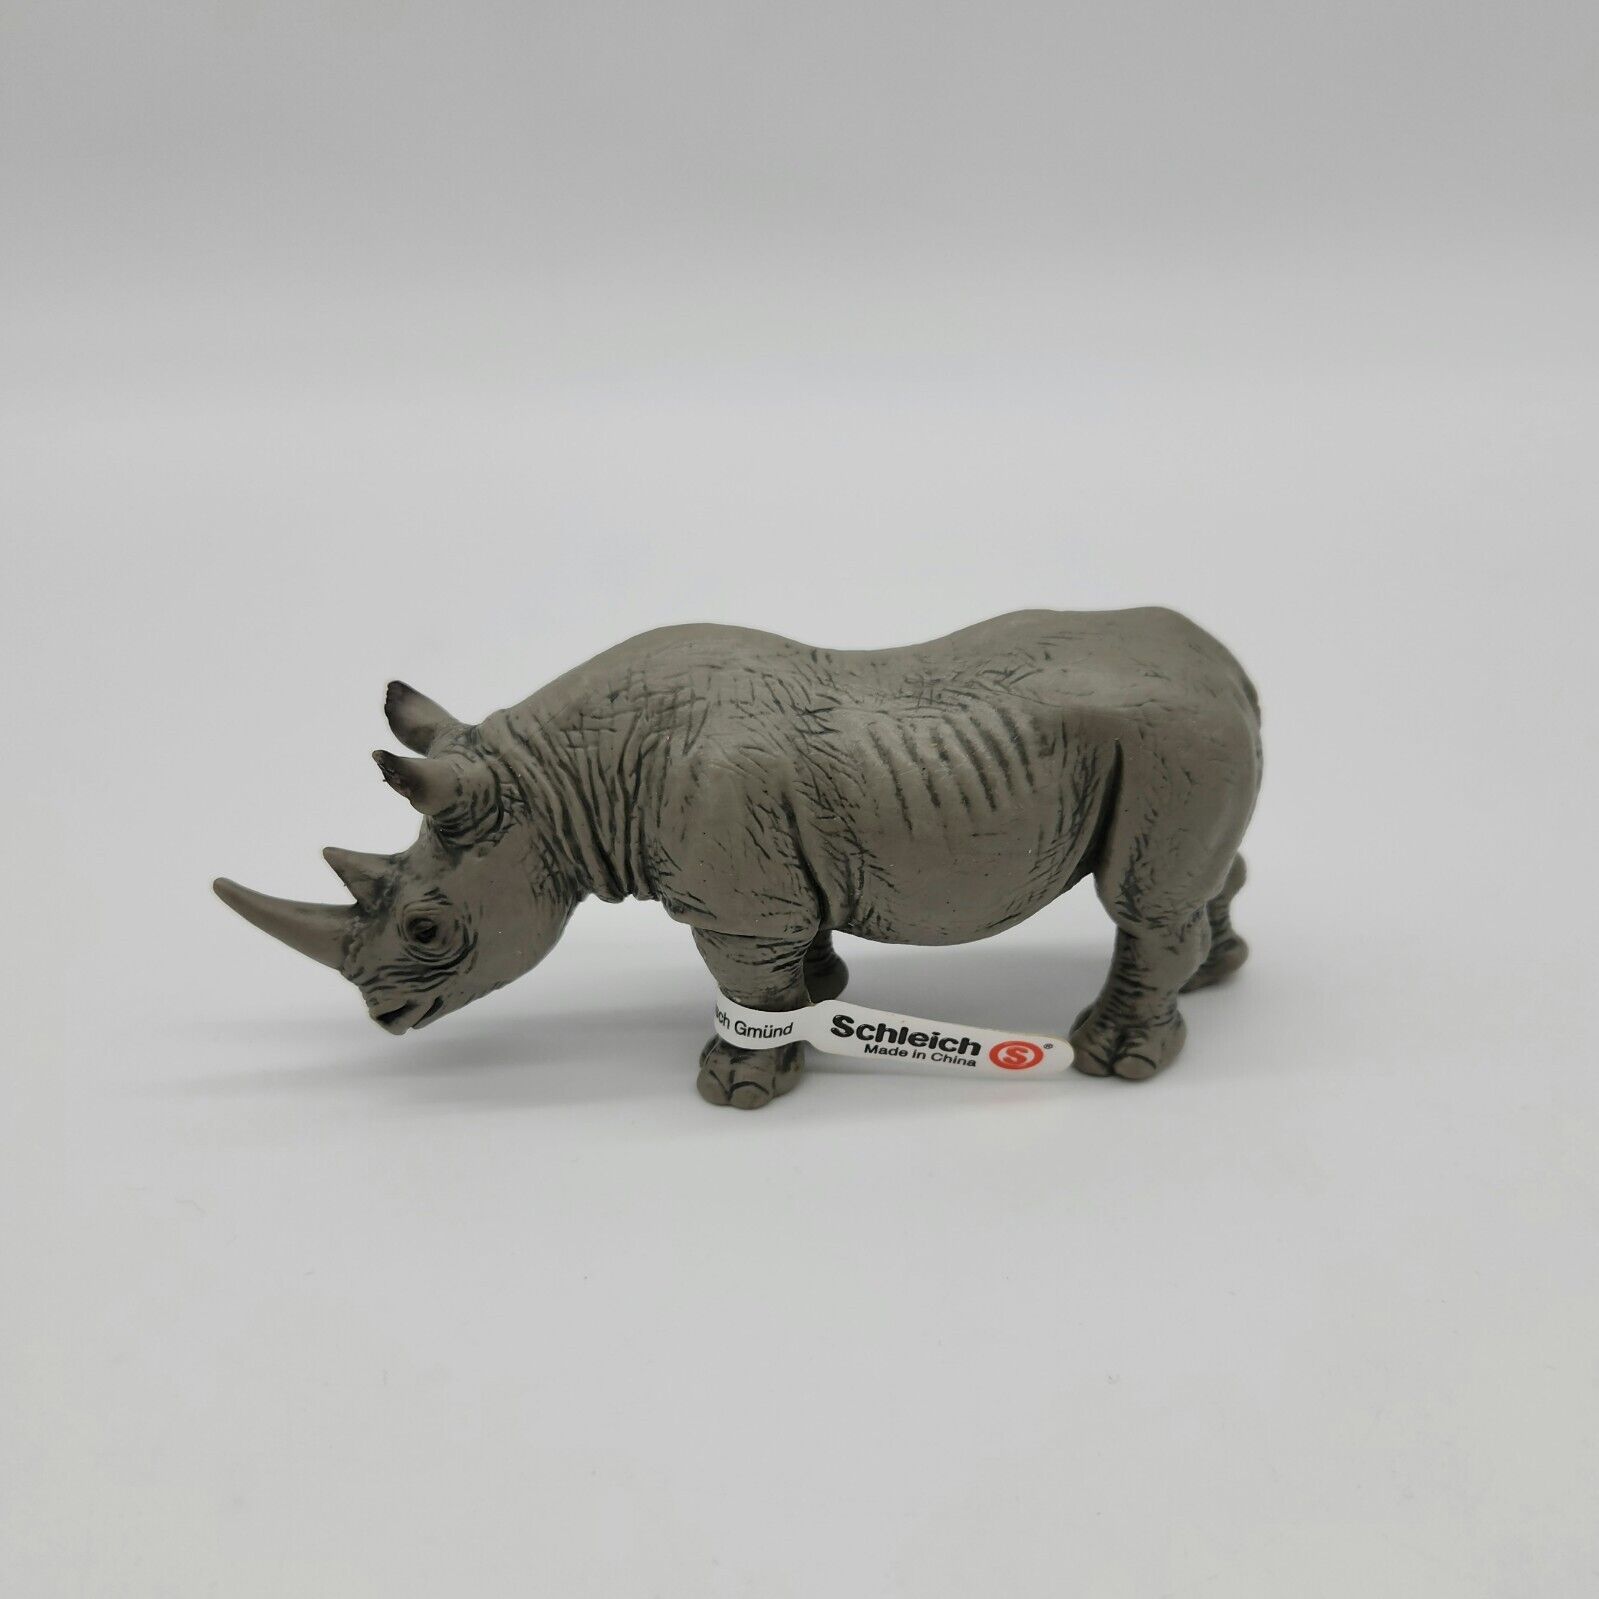 Schleich Rhino toy figure 2001 vtg Rhinoceros wild animal figurine NWT 